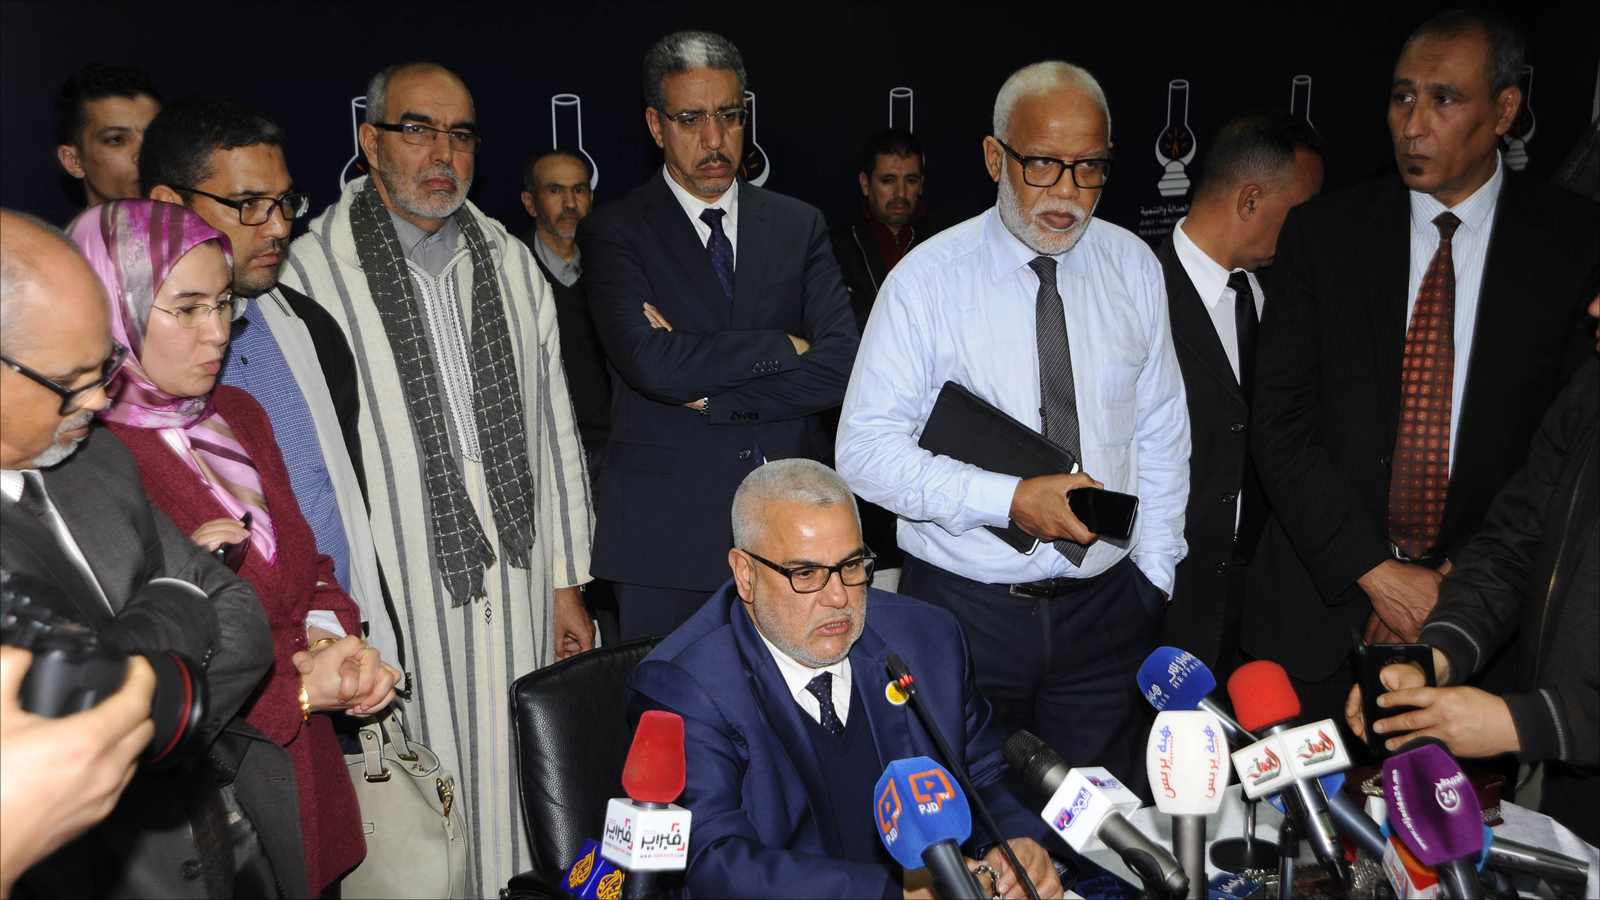 بكيران يريد أن يُقدم نفسه من جديد منقذا للبلاد وهو الذي أمضى خمس سنوات رئيسا لحكومتها بصلاحيات دستورية لم يسبقه إليها أي وزير أول سابق في تاريخ المغرب.